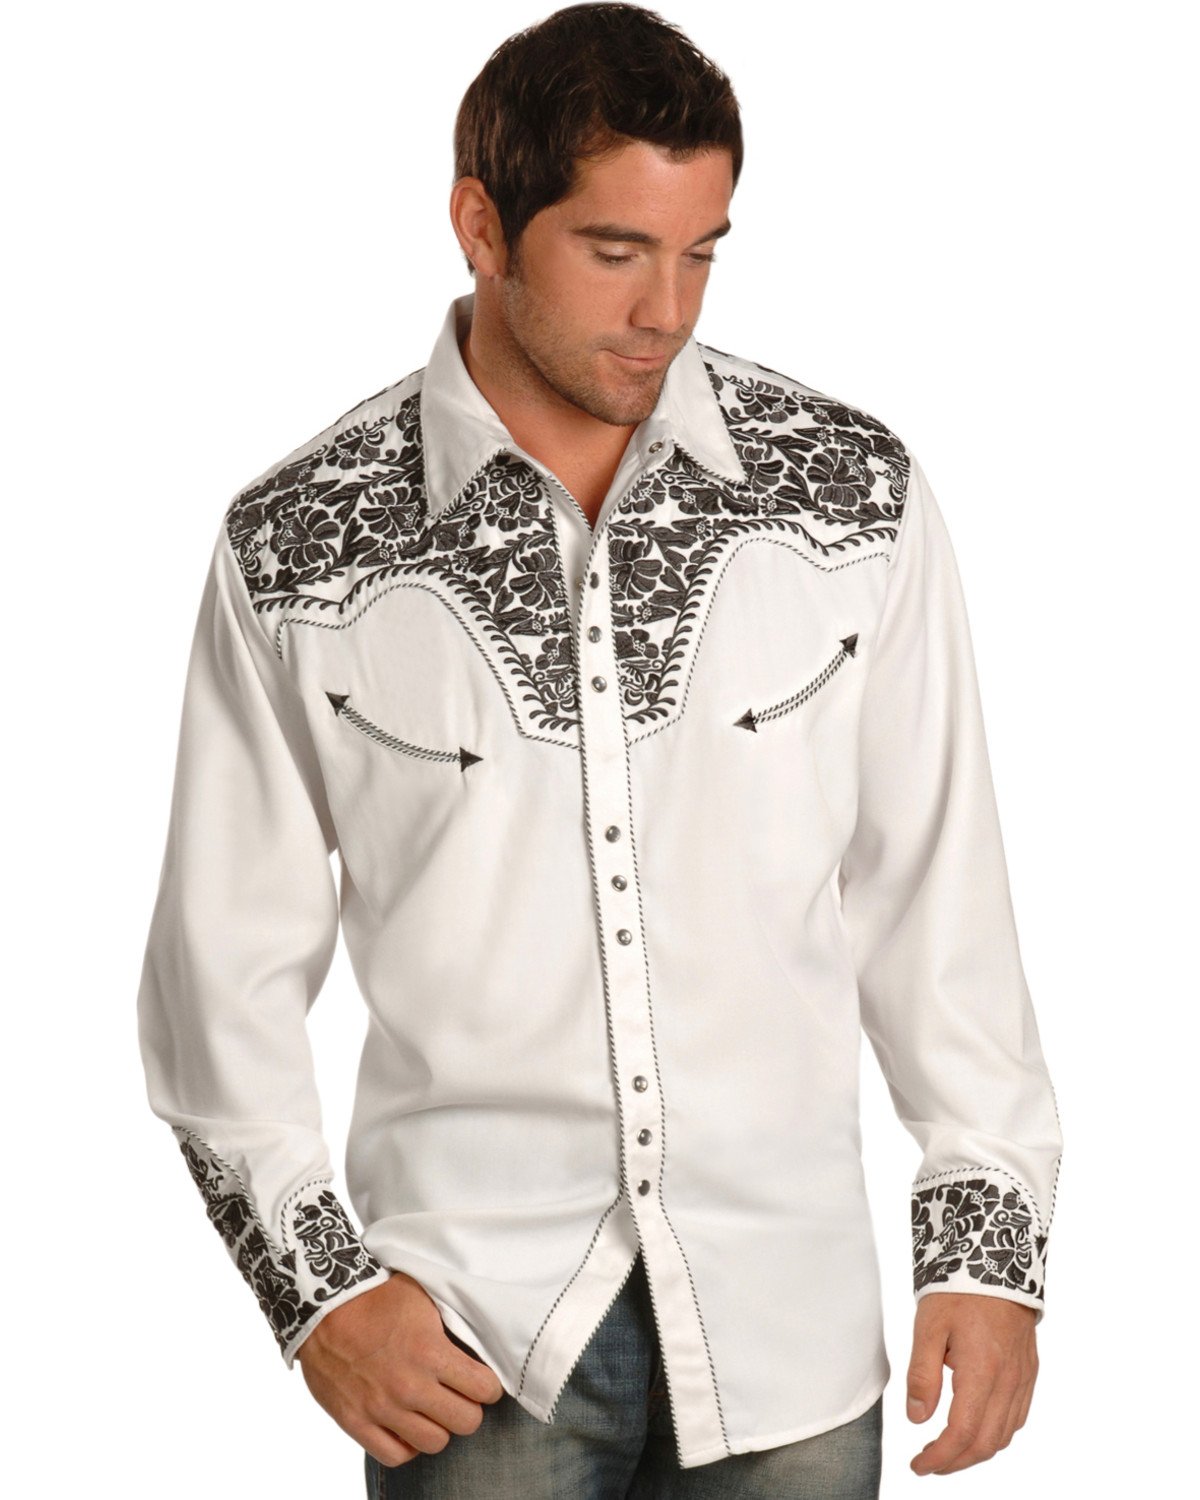 Озон рубашки мужские с длинным. White Cuff рубашки. Рубашка с вышивкой мужская. Нарядная рубашка для мужчин.